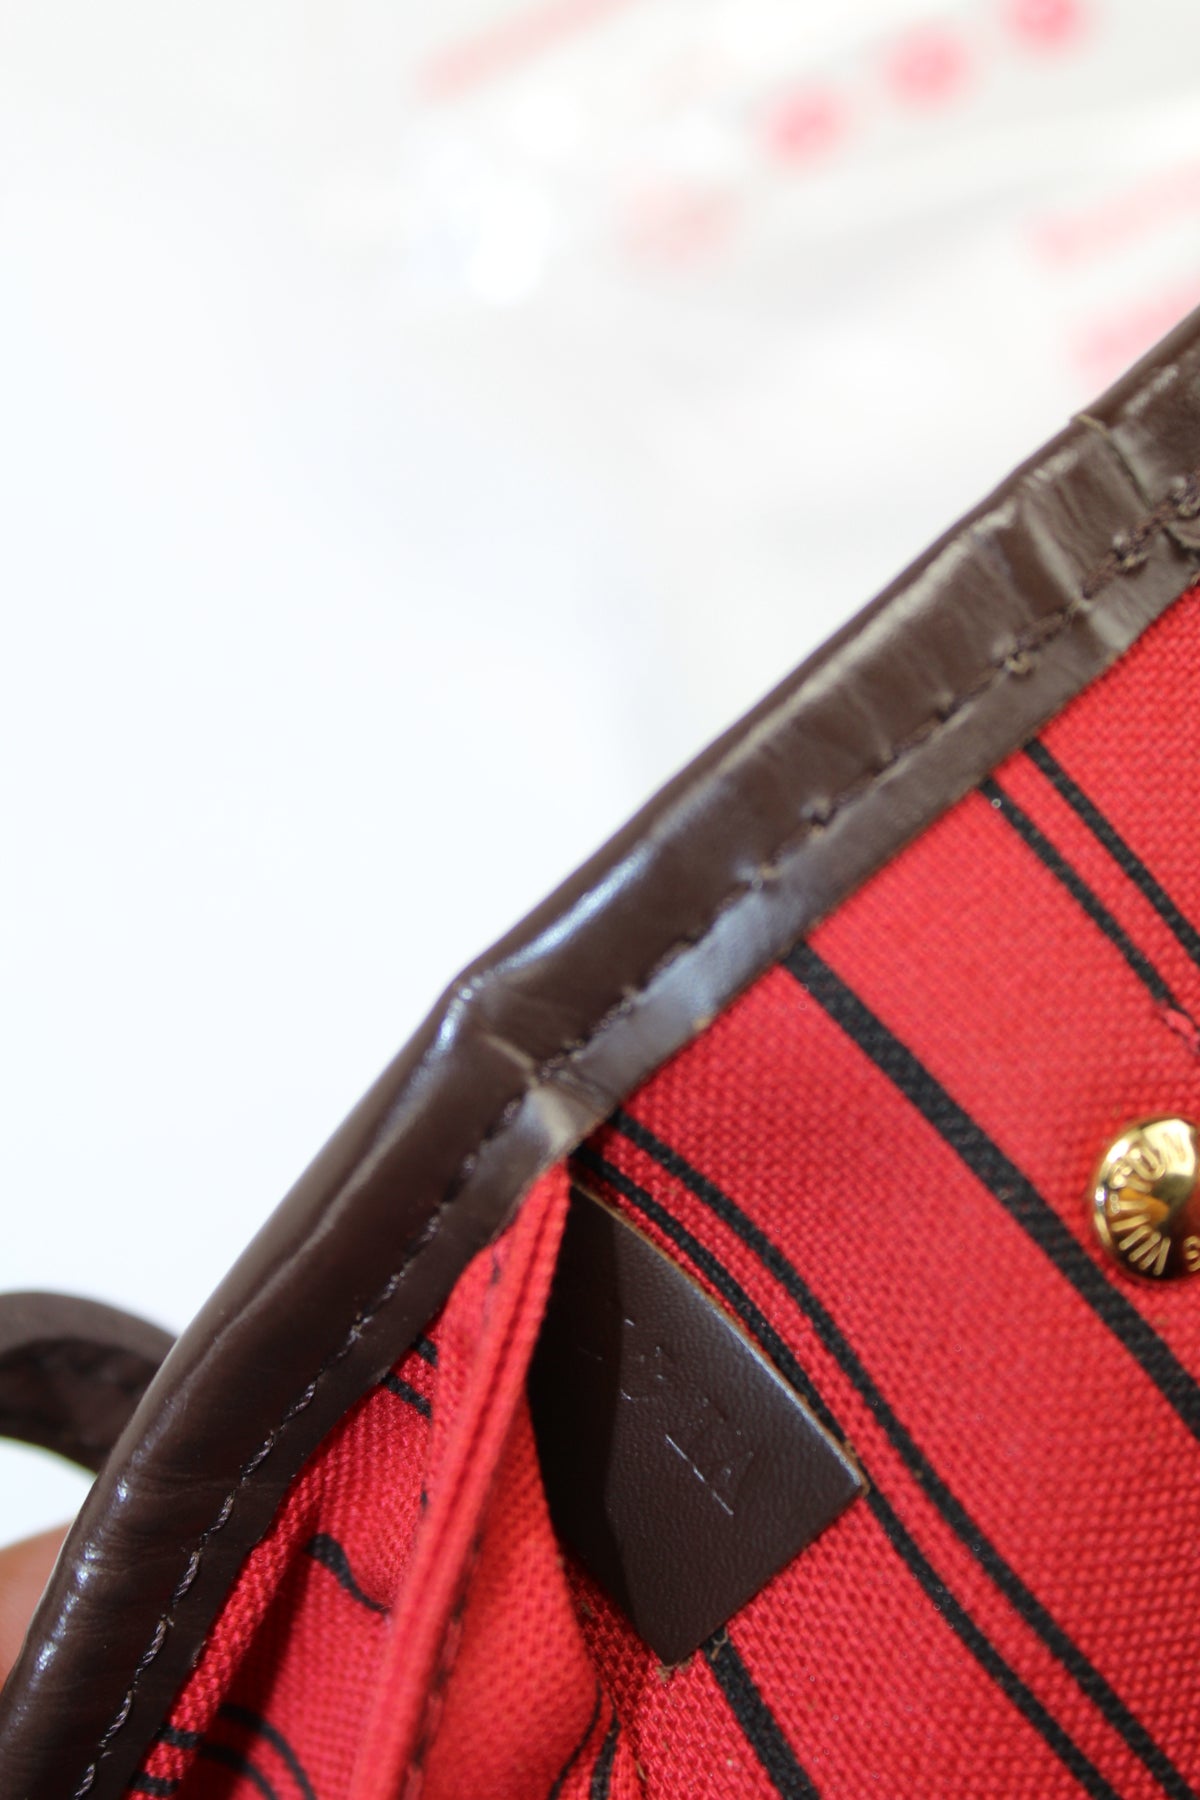 Neverfull PM Damier Ebene – Keeks Designer Handbags